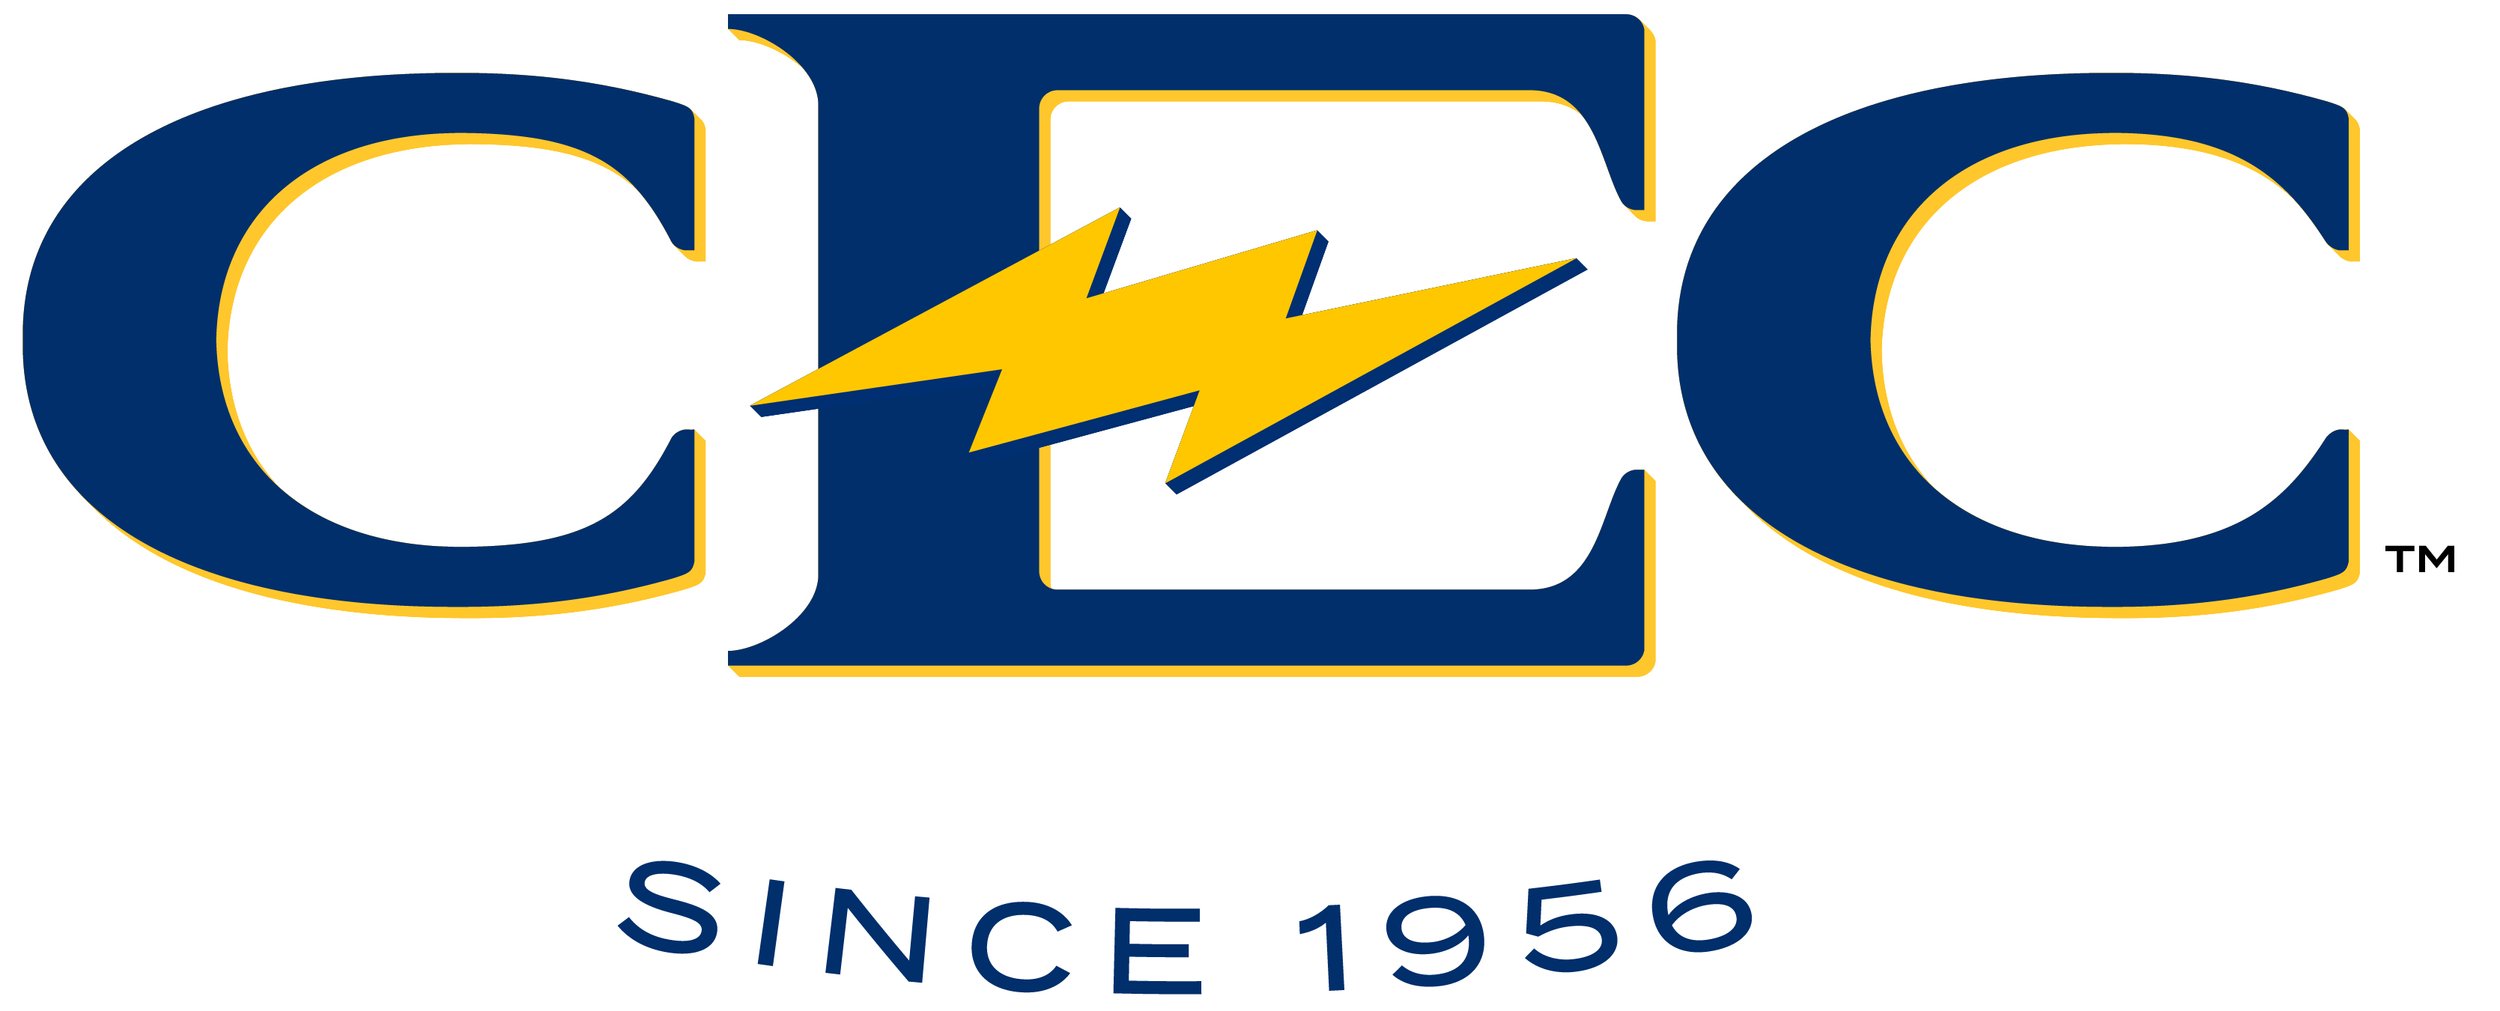 CEC Logo_Full Color Navy.jpg